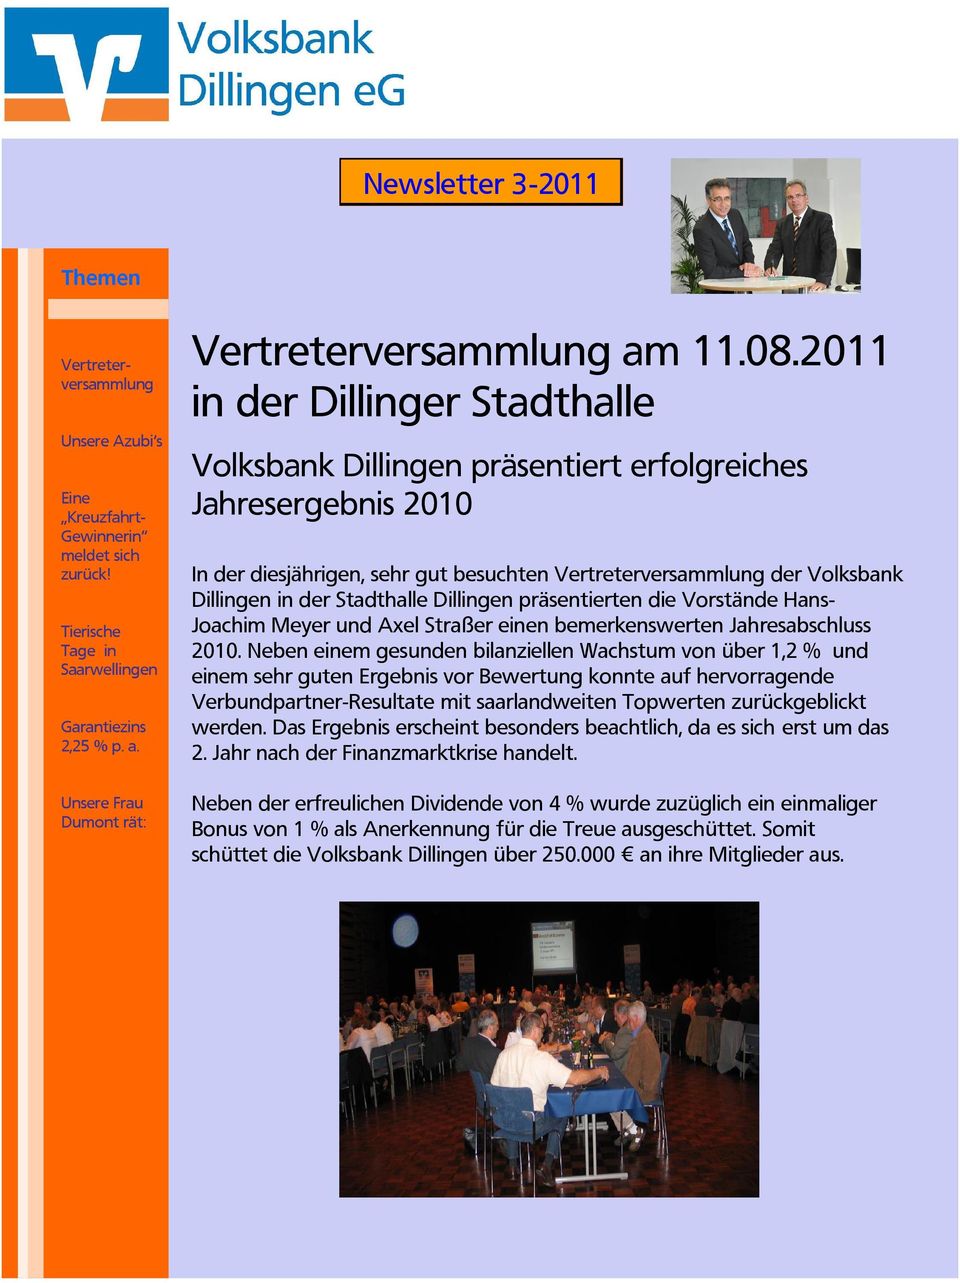 2011 in der Dillinger Stadthalle Volksbank Dillingen präsentiert erfolgreiches Jahresergebnis 2010 In der diesjährigen, sehr gut besuchten Vertreterversammlung der Volksbank Dillingen in der